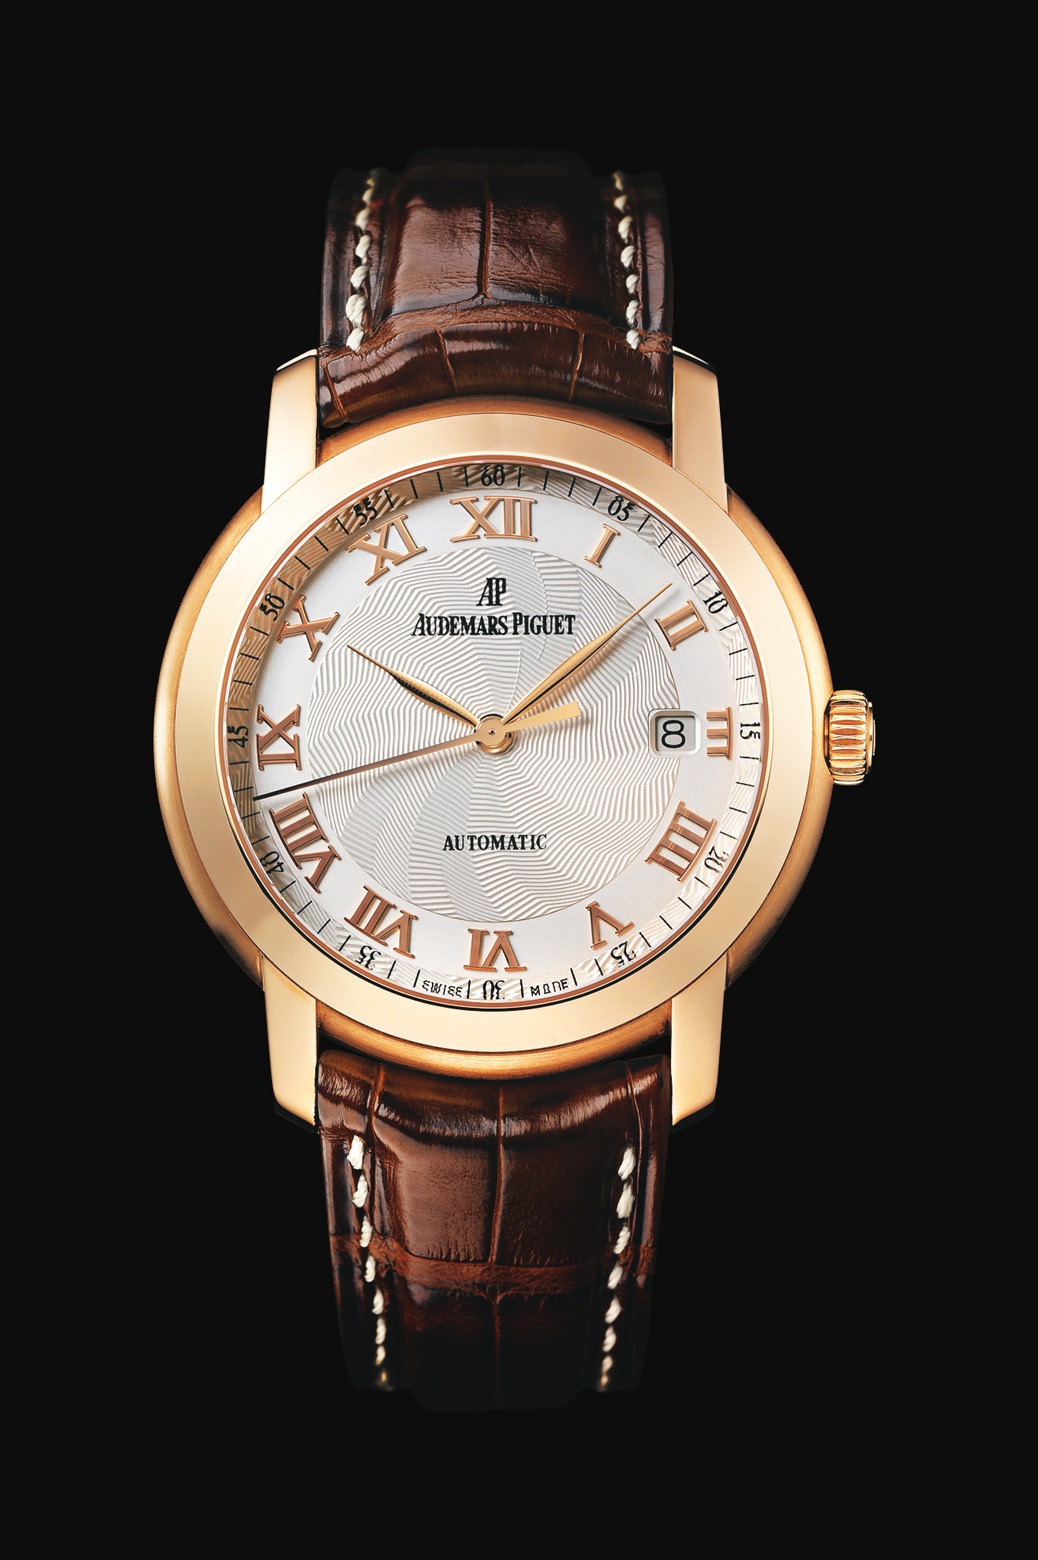 Audemars Piguet Jules Audemars Automatic Pink Gold watch REF: 15120OR.OO.A088CR.03